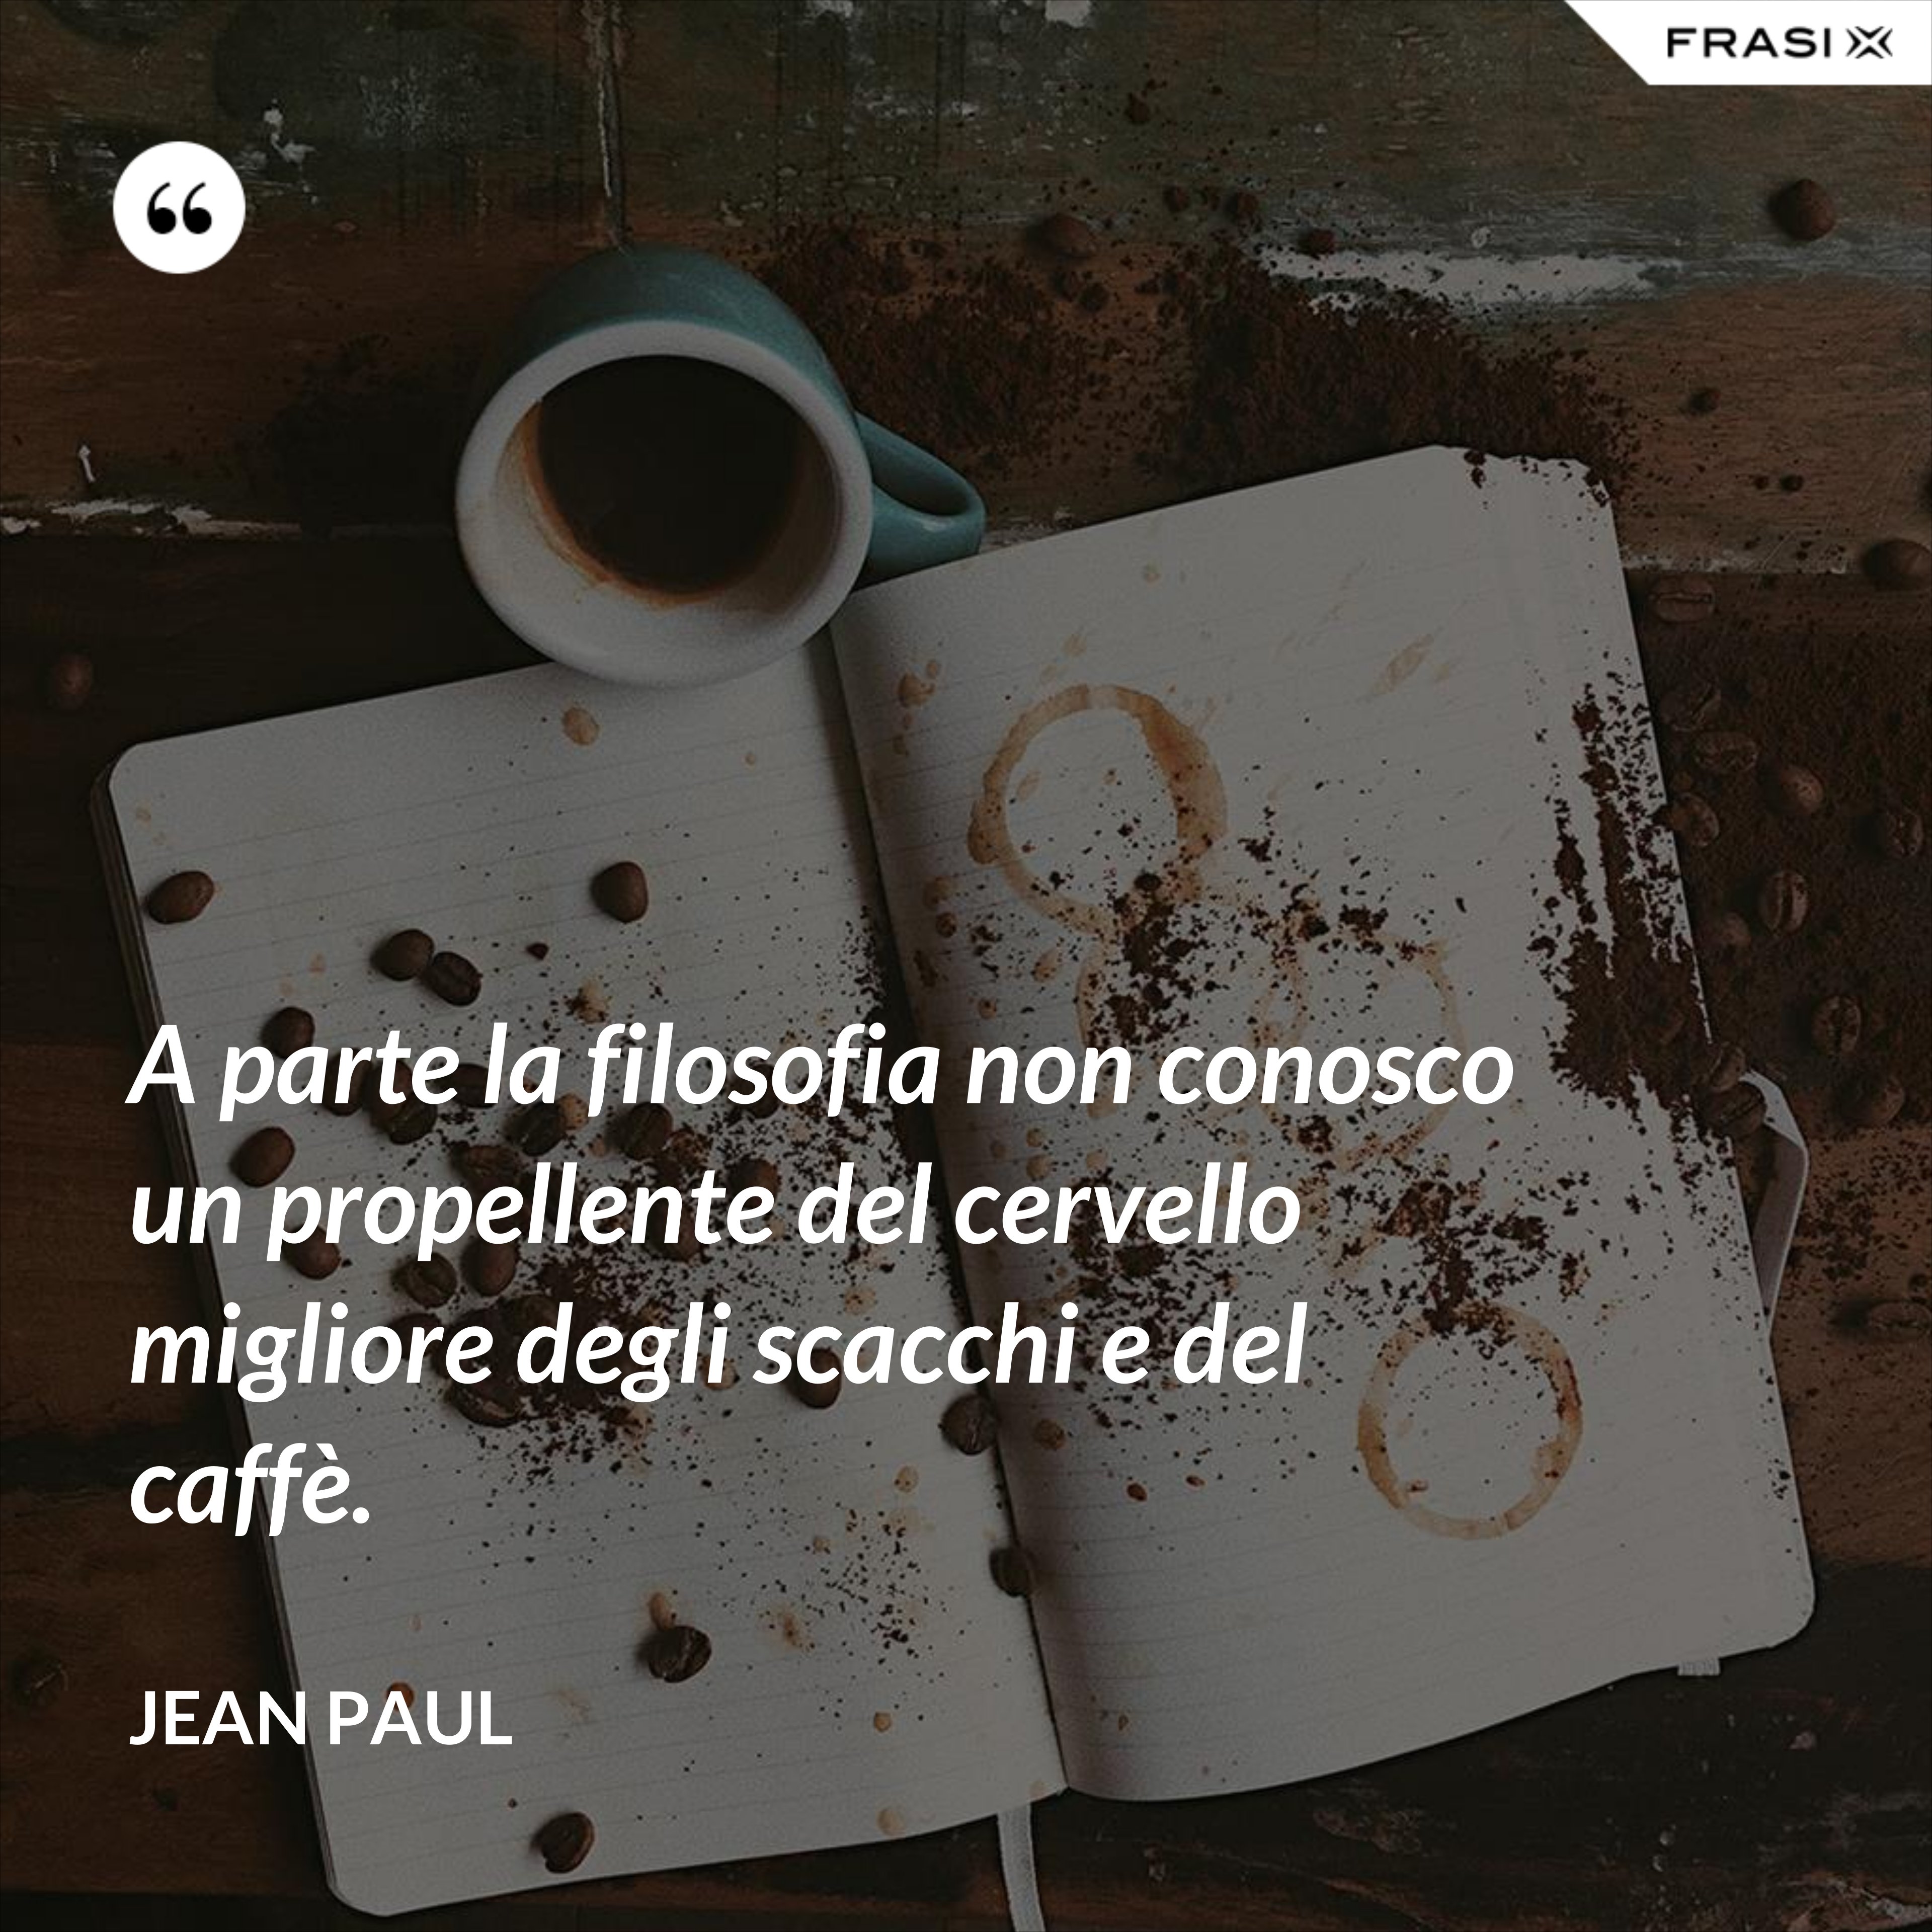 A parte la filosofia non conosco un propellente del cervello migliore degli scacchi e del caffè. - Jean Paul